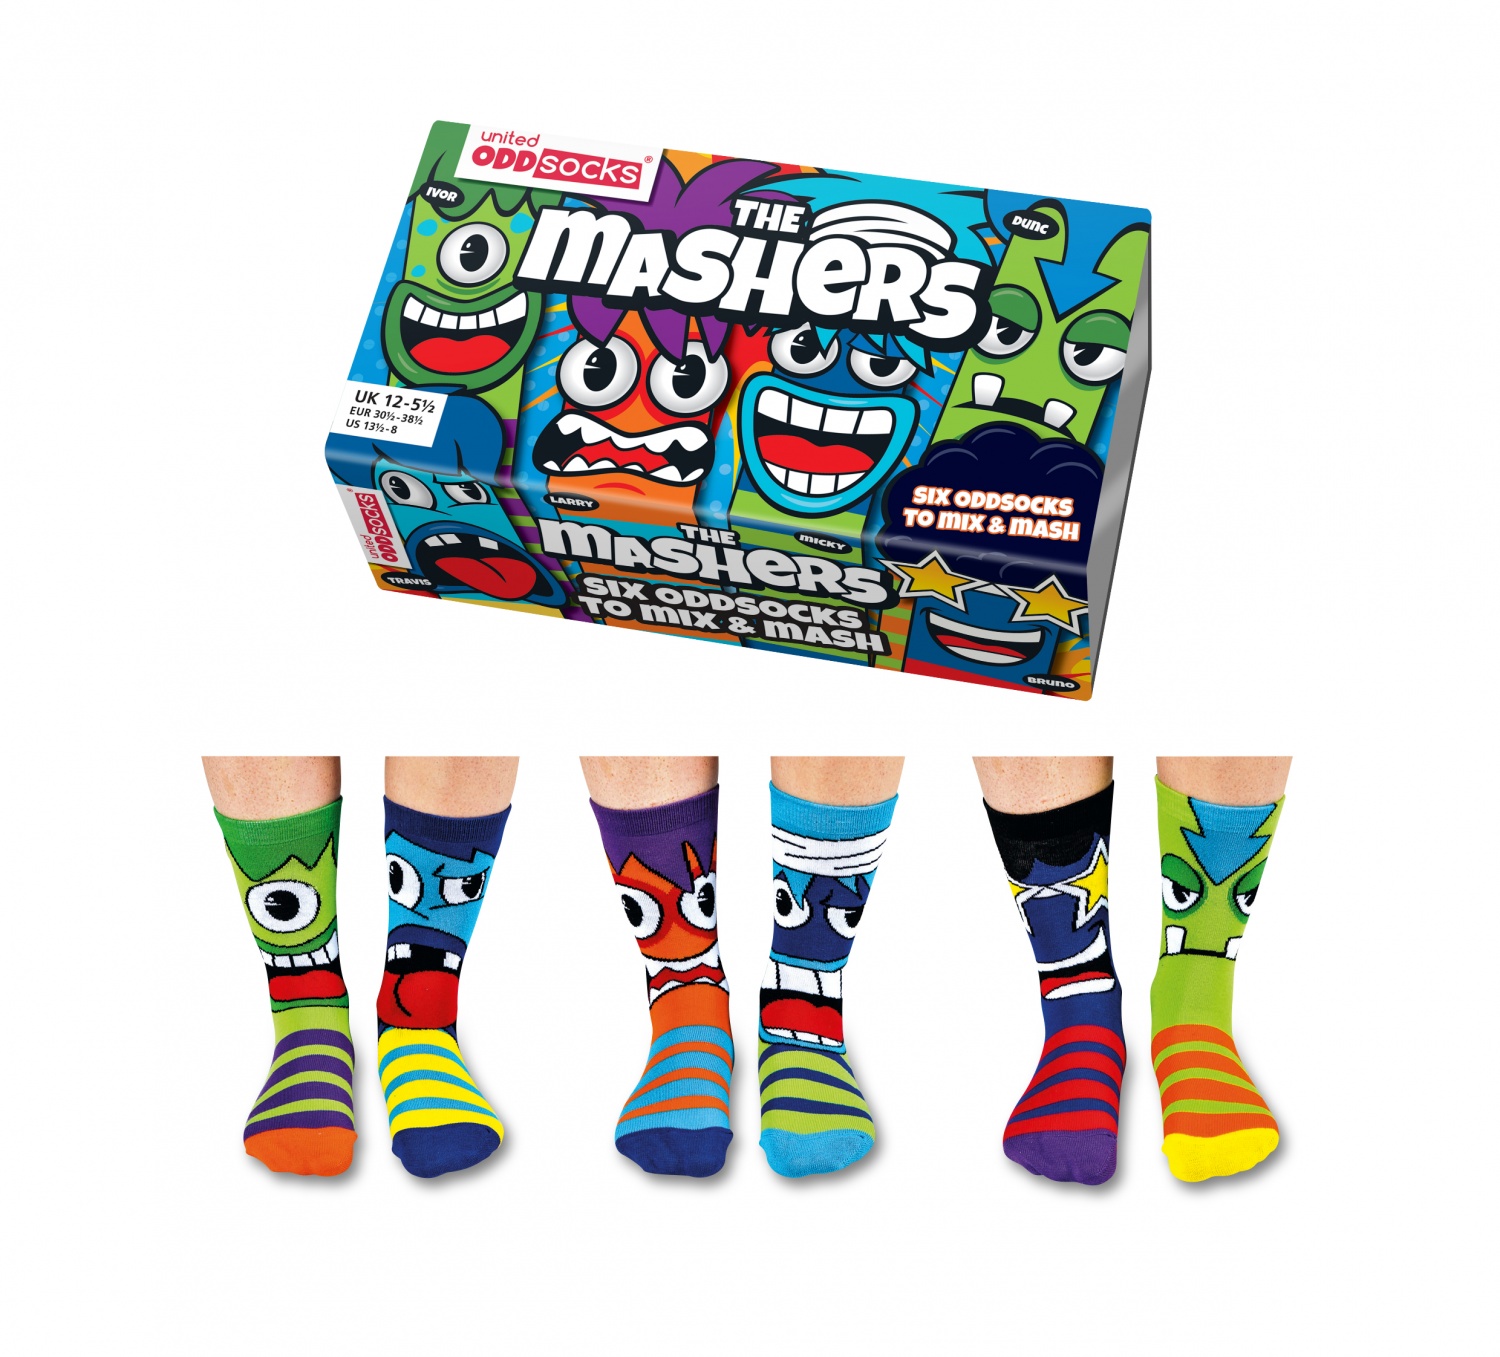 Mashers Children's Socks United Oddsocks